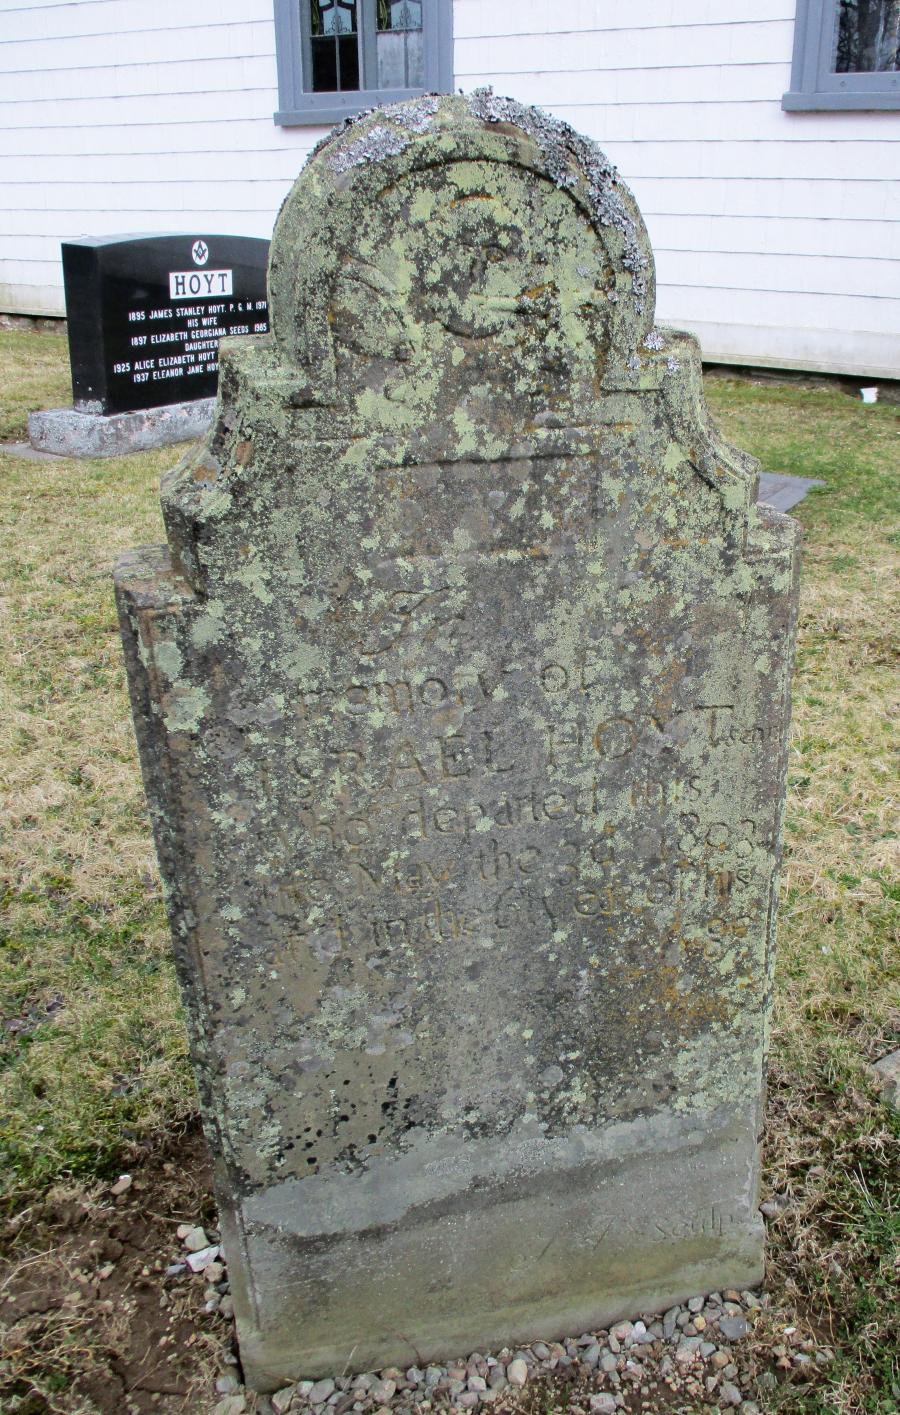 Israel Hoyt's gravestone